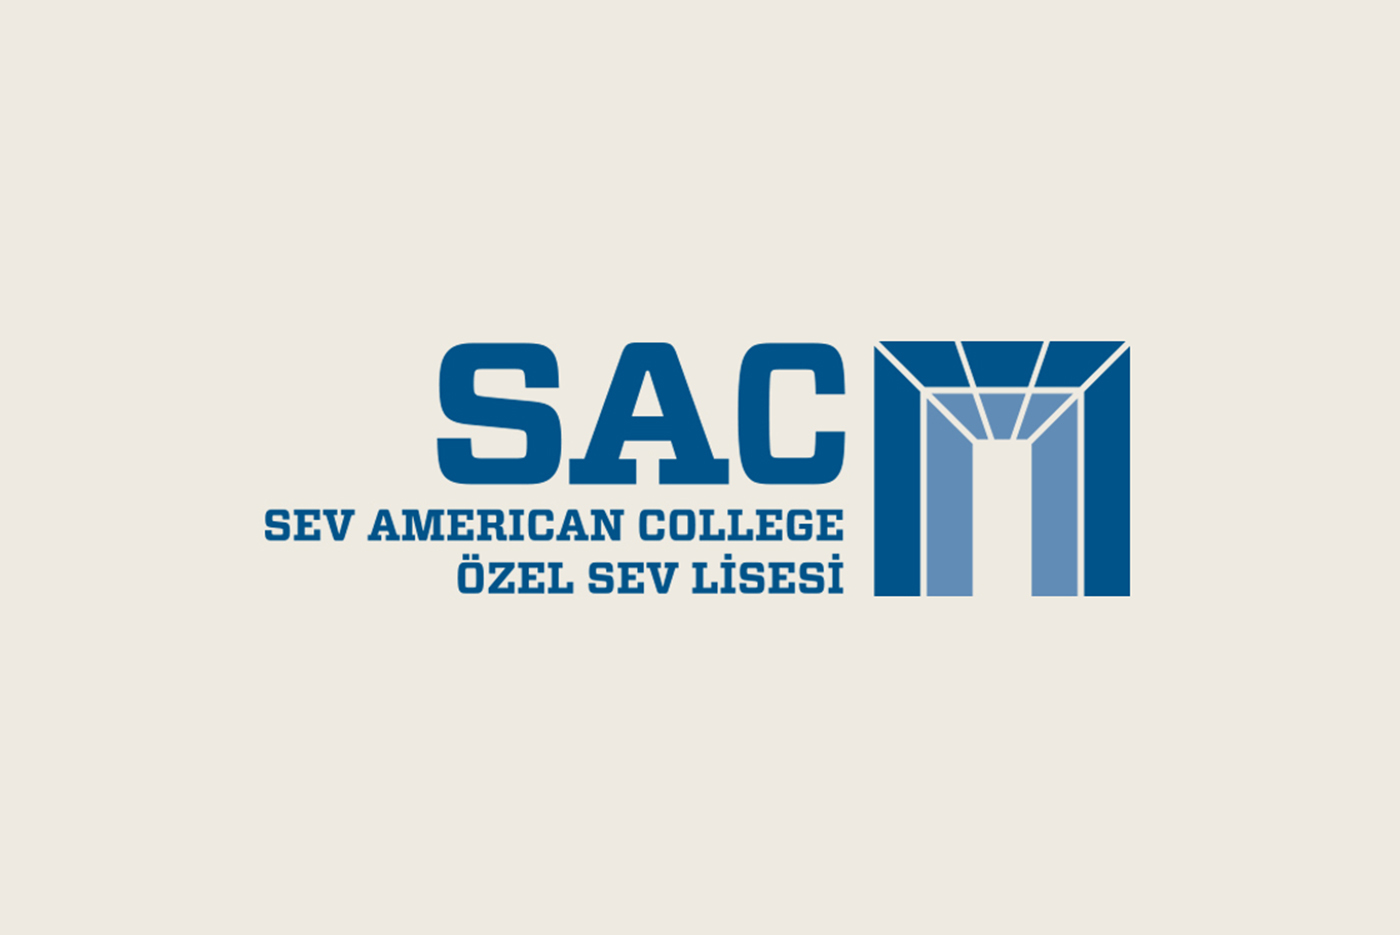 Logo Design Education college